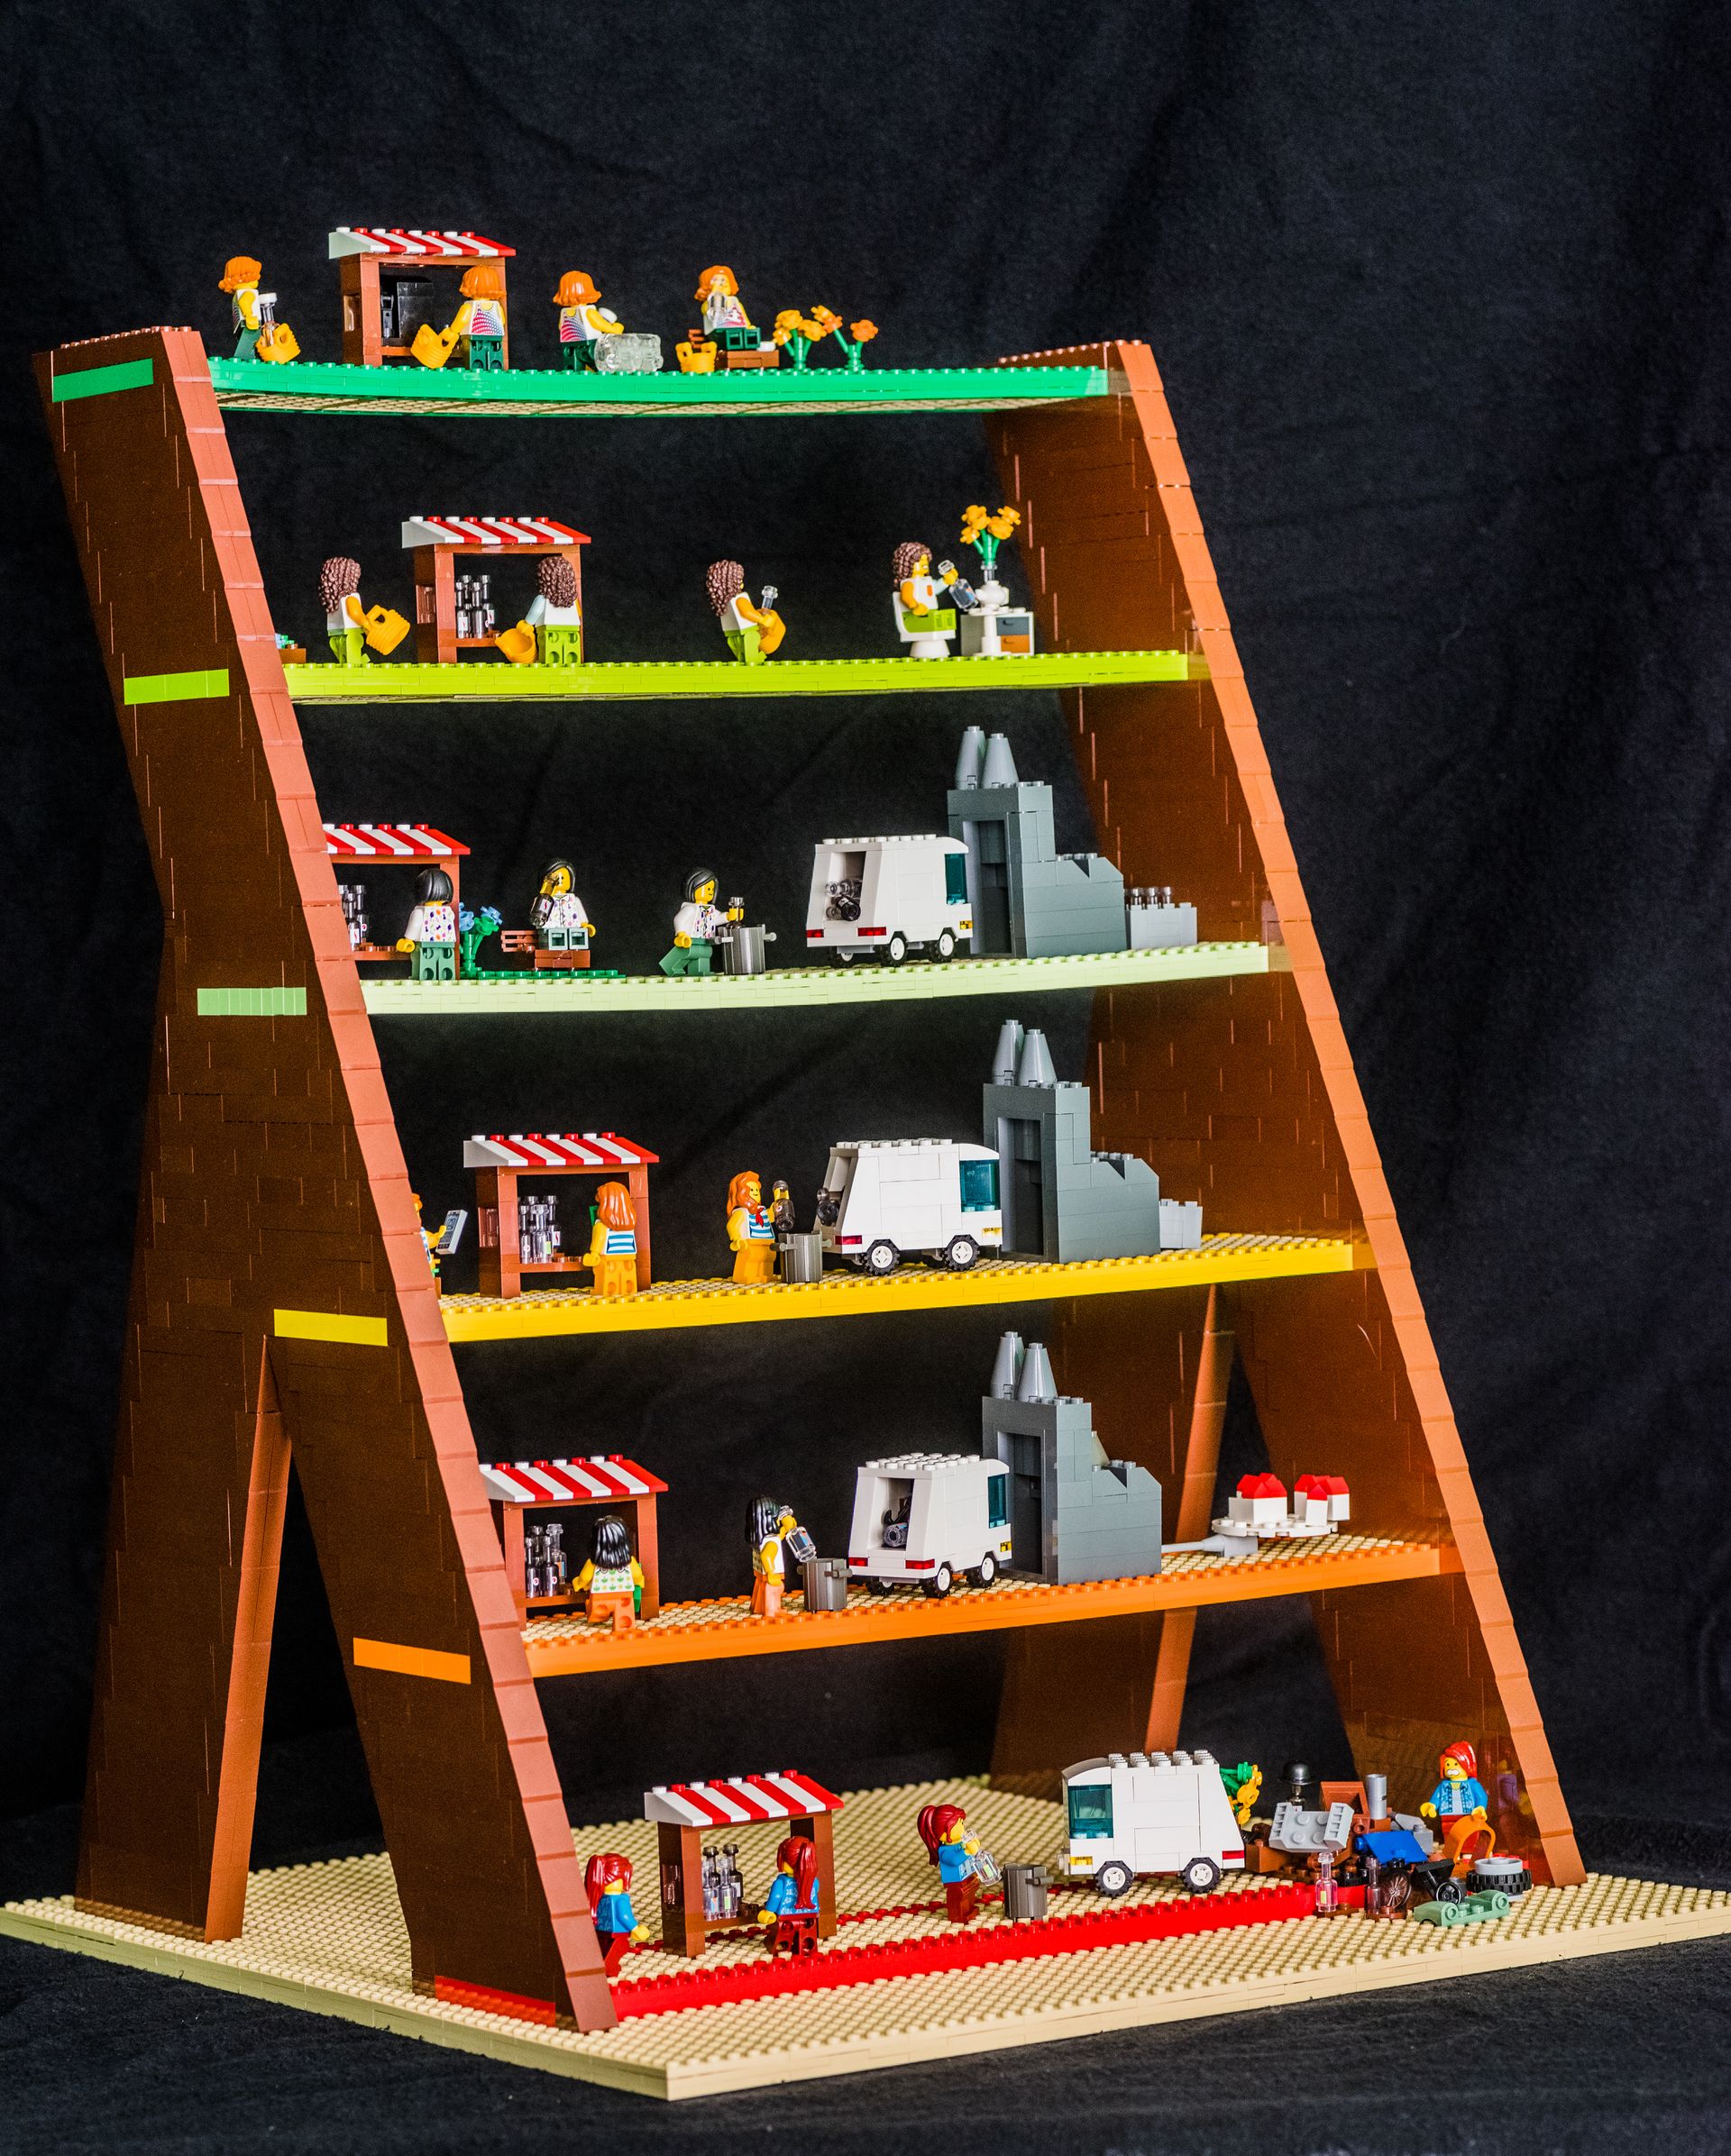 Lansink’s Ladder built out of LEGO